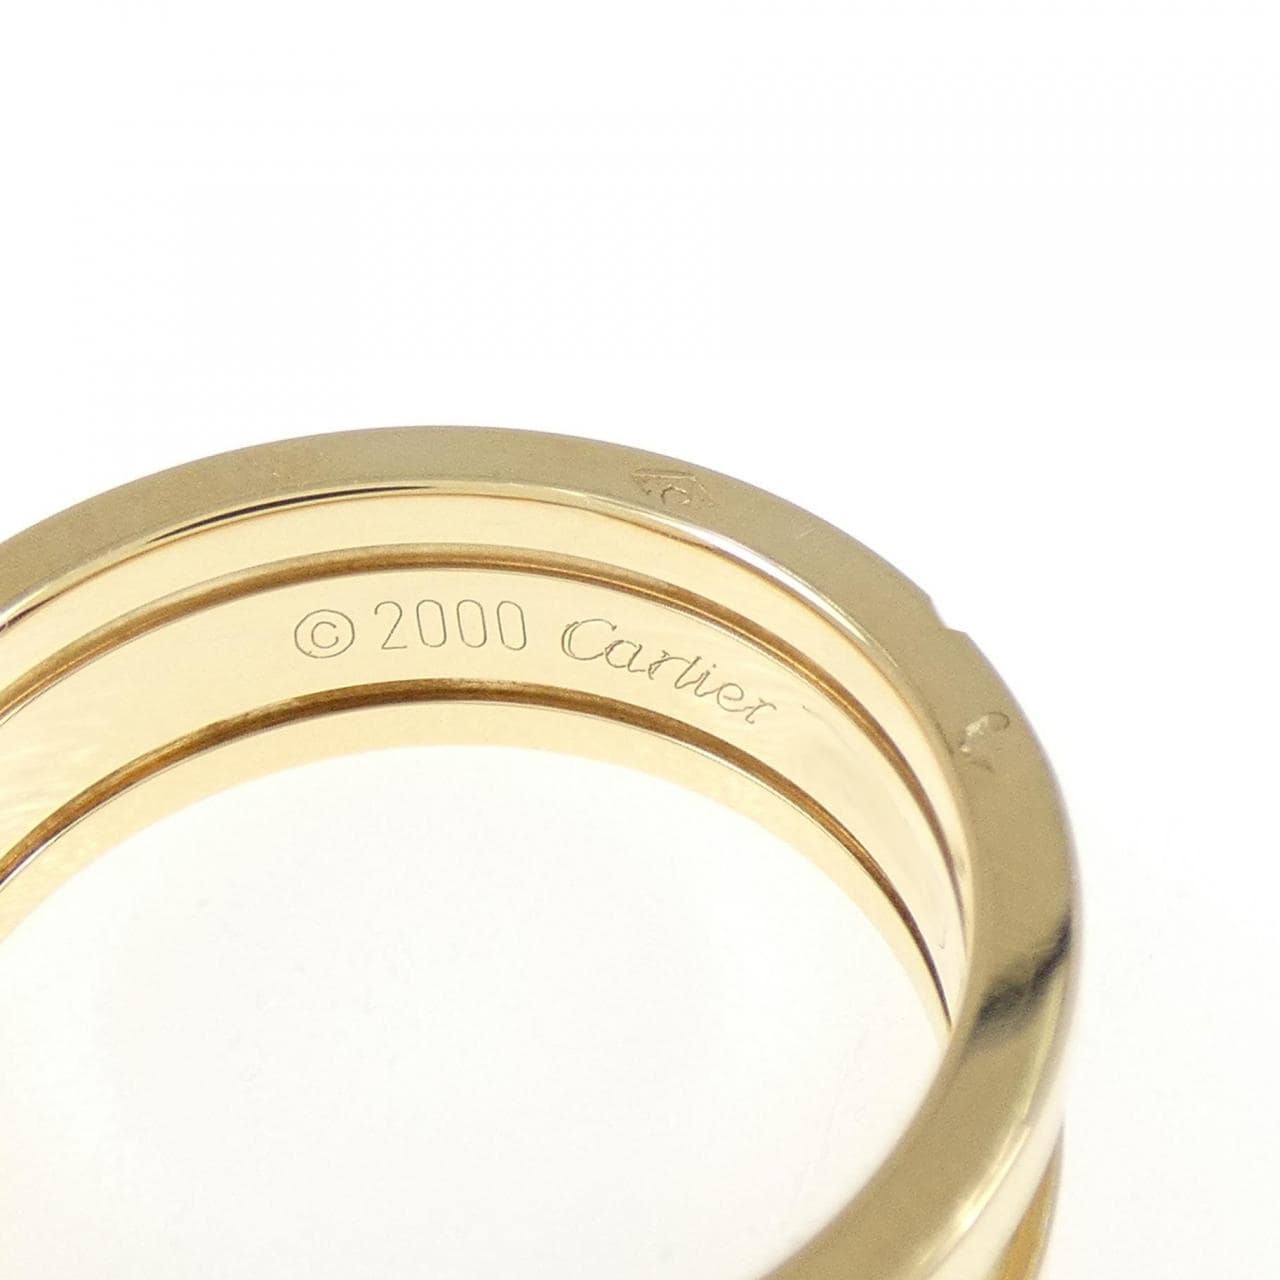 Cartier C2小號戒指